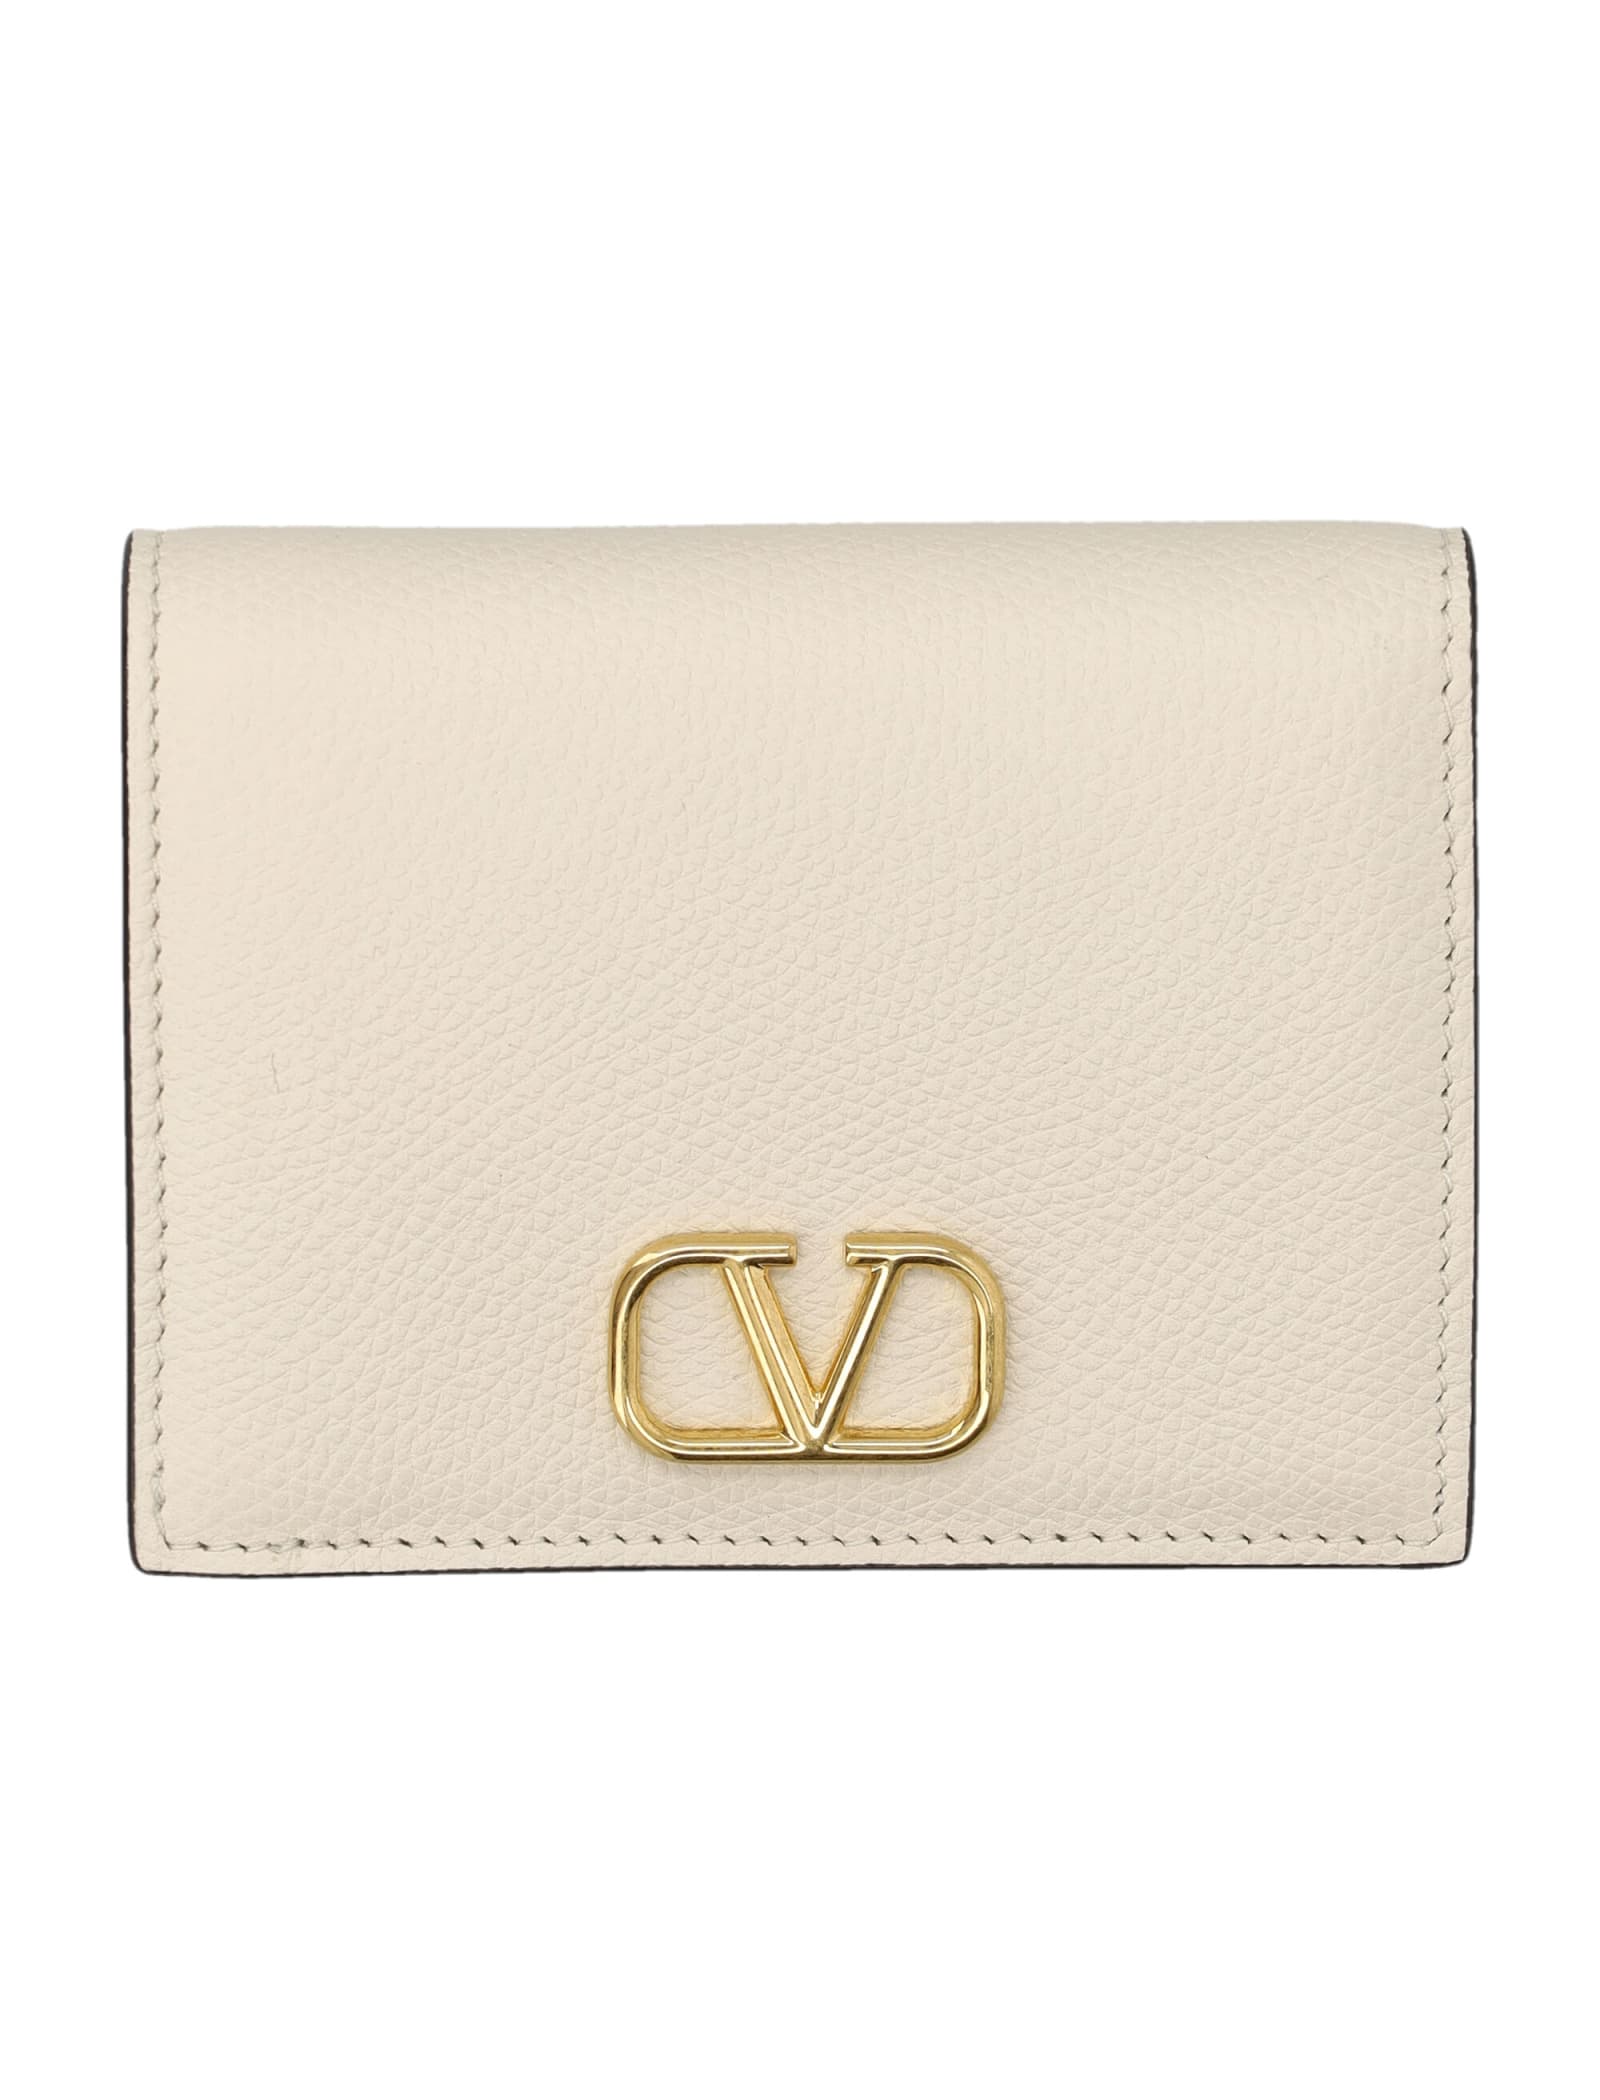 Valentino Garavani Flap French Wallet Vlogo Signature V In Light Ivory